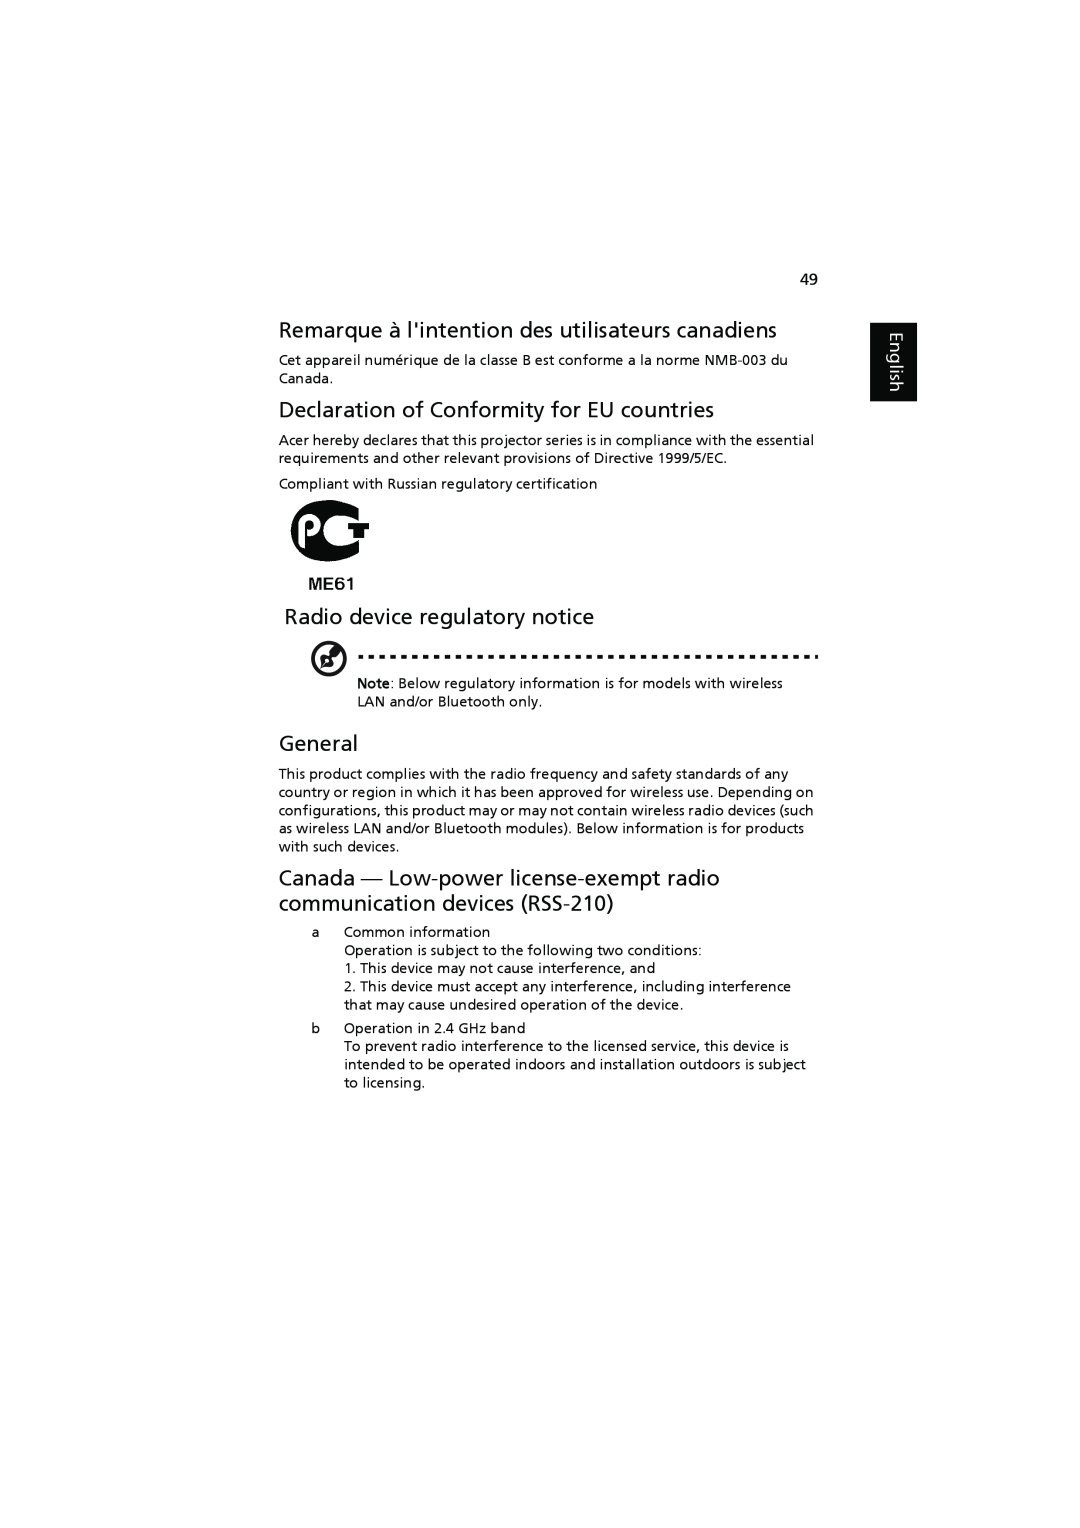 Acer P1206 Remarque à lintention des utilisateurs canadiens, Declaration of Conformity for EU countries, General, English 